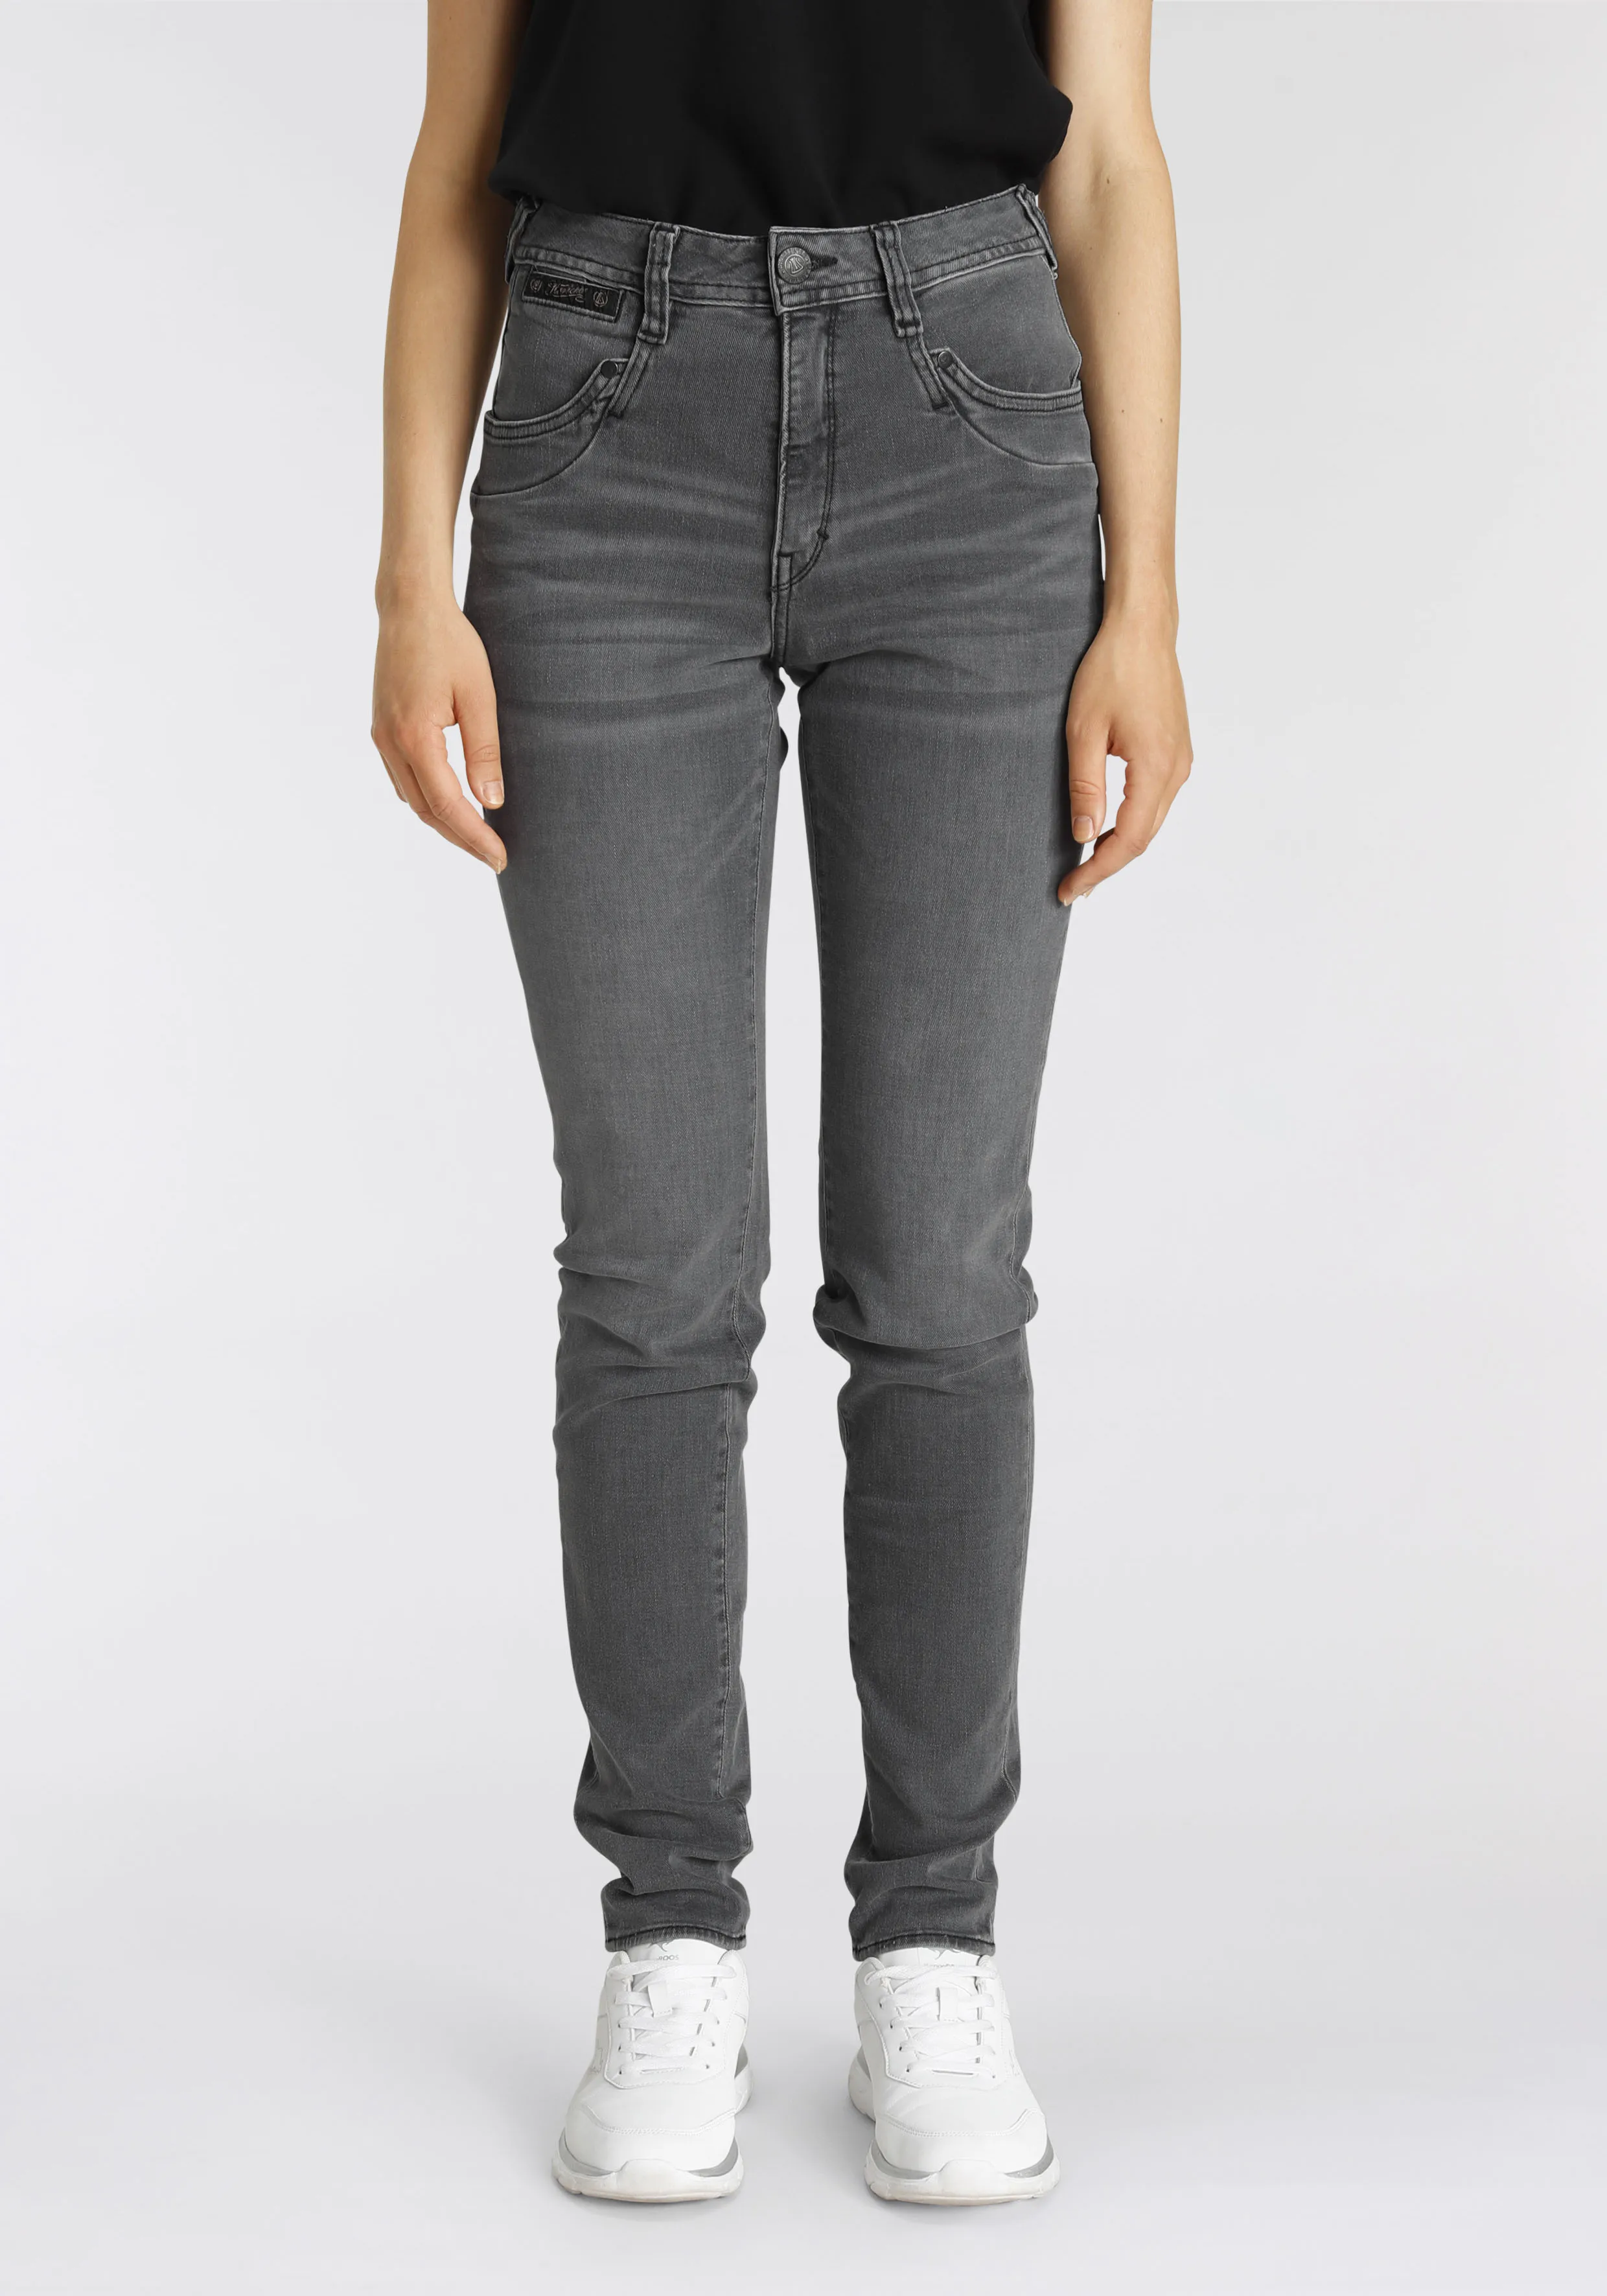 High-waist-Jeans HERRLICHER "PIPER HI SLIM ORGANIC DENIM CASHMERE TOUCH" Gr. 26, Länge 30, grau (o x y) Damen Jeans Röhrenjeans umweltfreundlich dank Kitotex Technologie